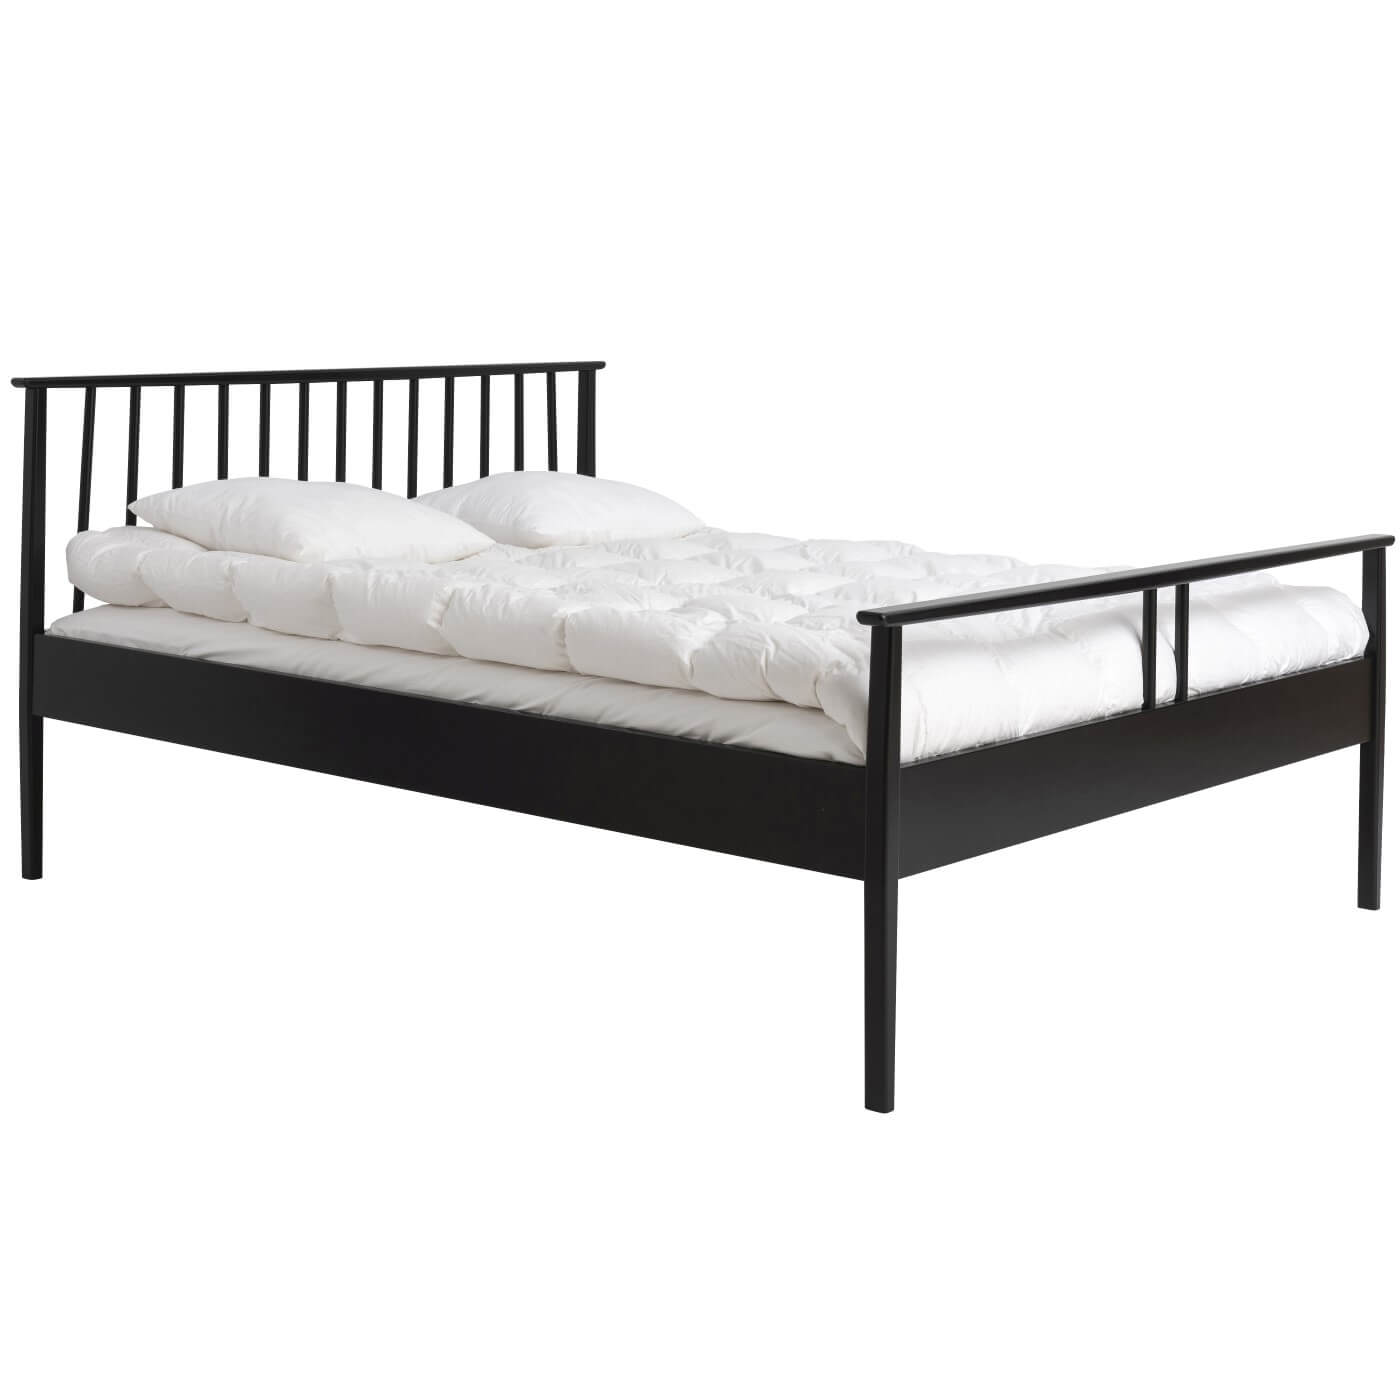 Czarne łóżko drewniane nowoczesne NOEL. Łóżko drewniane 160x200 widoczne w całości. Na łóżku z pięknym ażurowym szczytem z drewna w kolorze czarnym leży biała kołdra i 2 poduszki. Skandynawski design